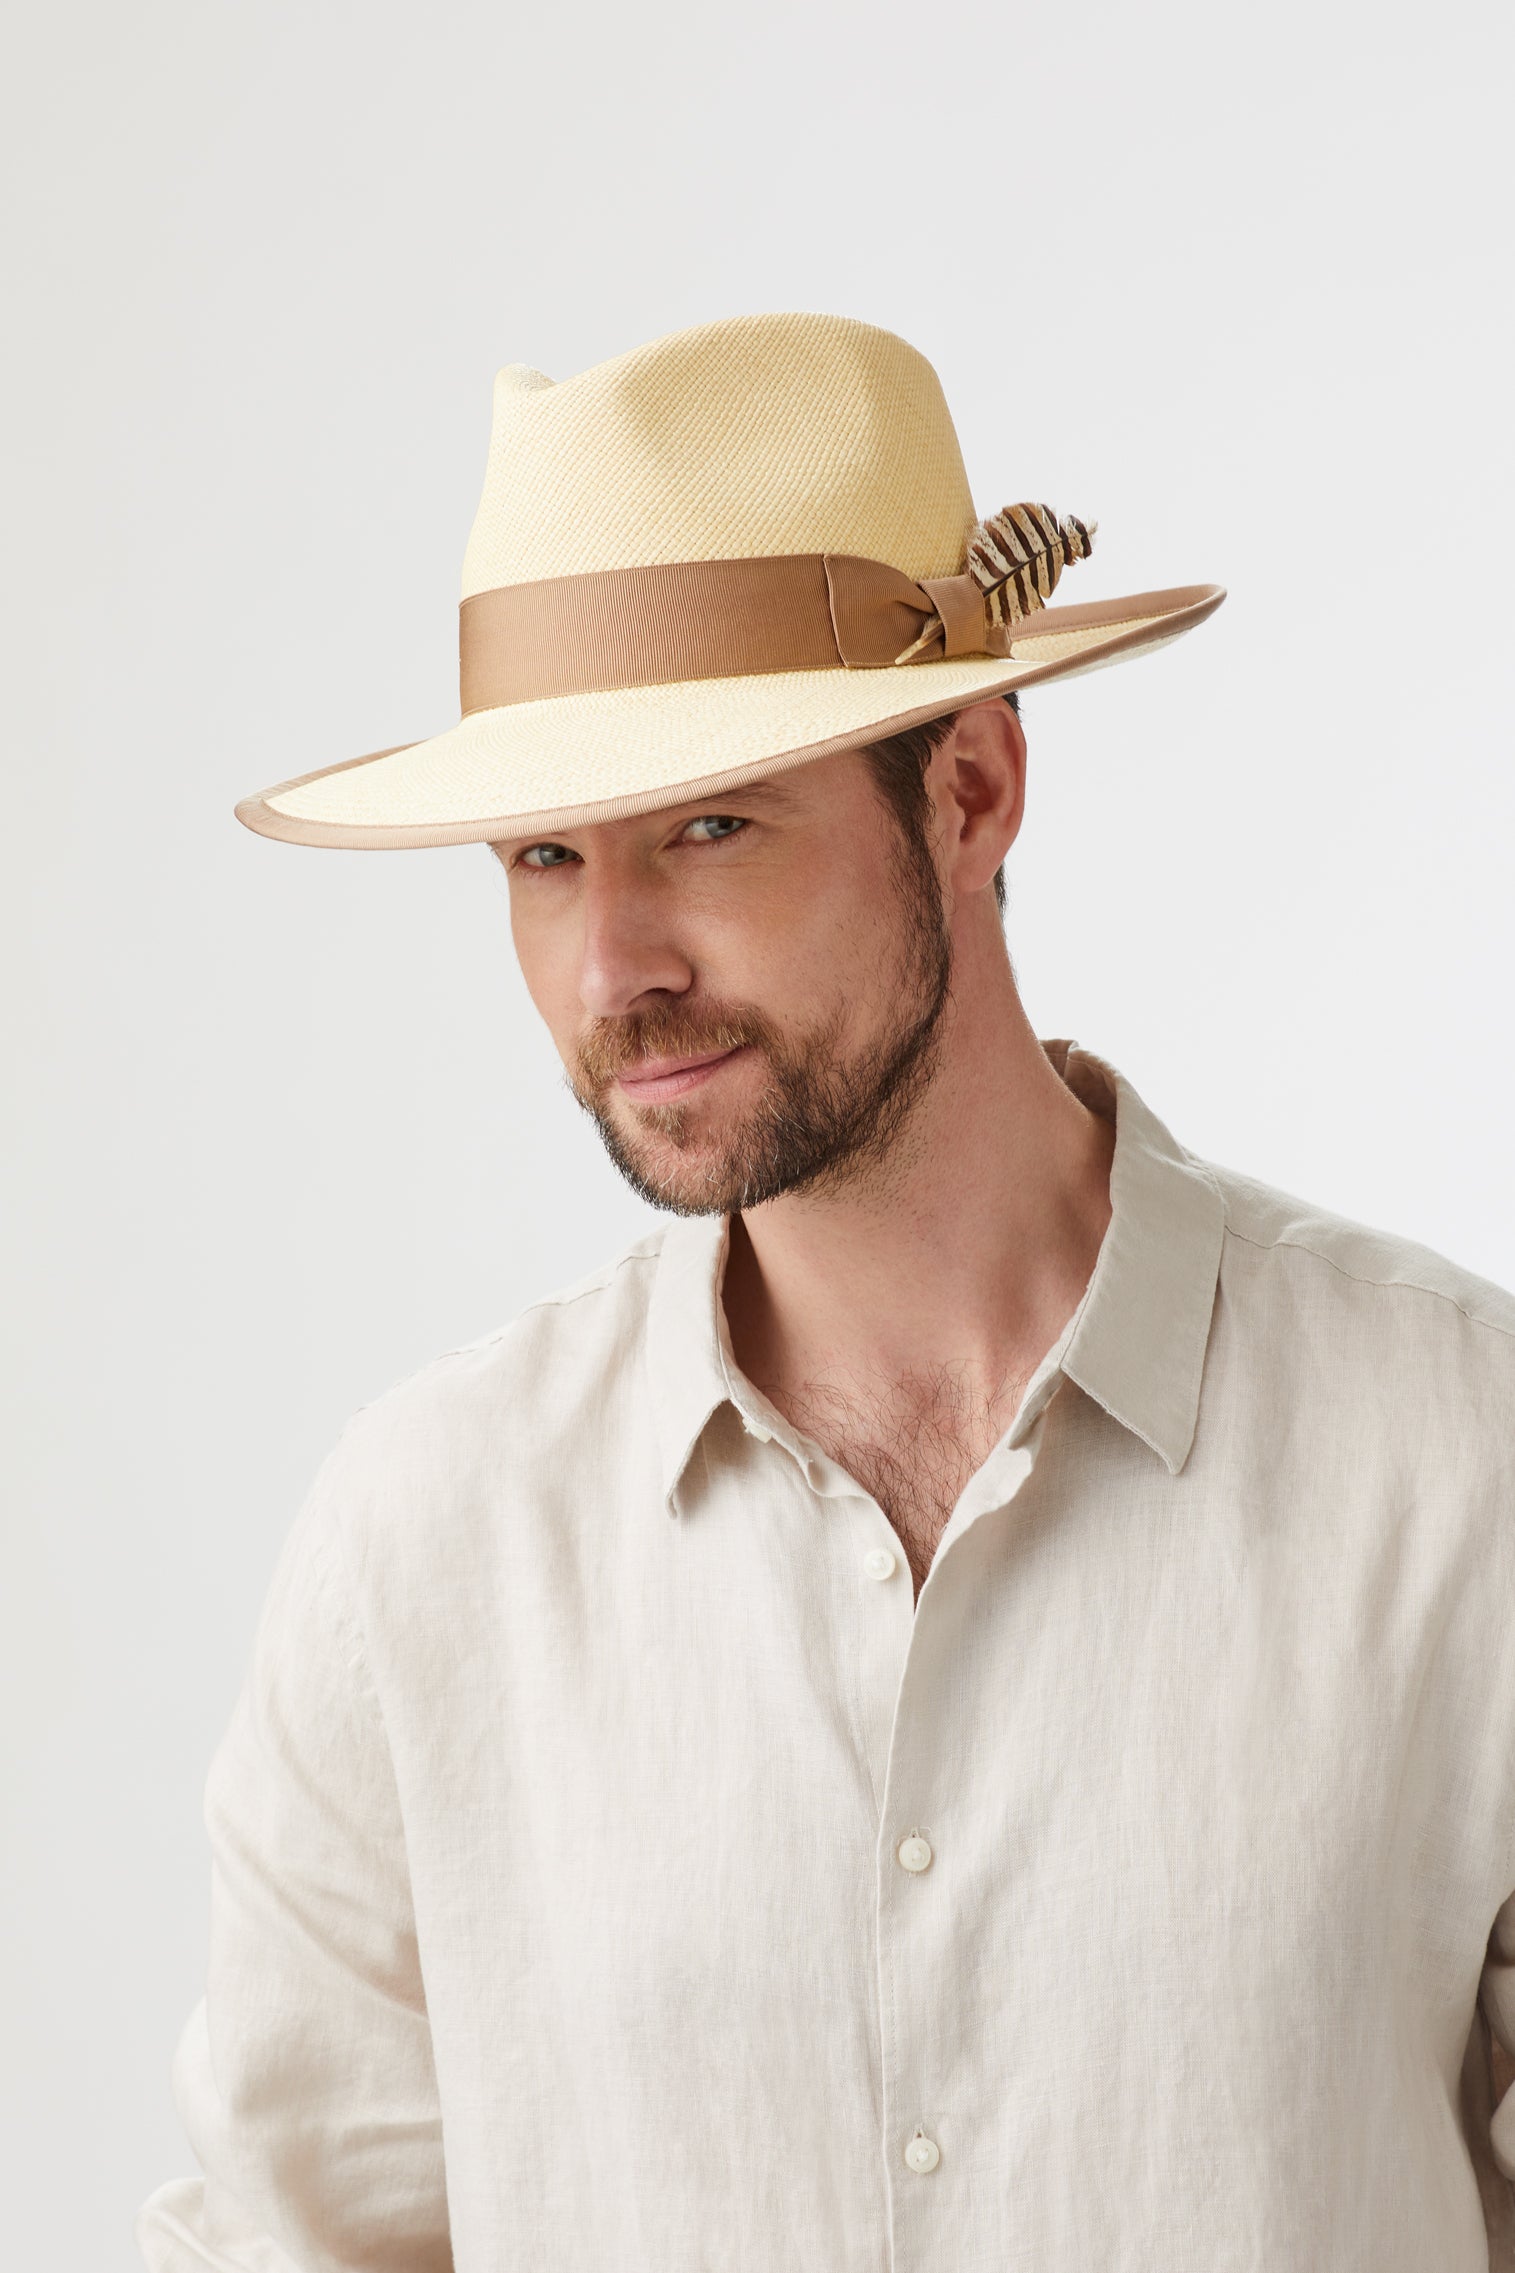 San Diego Panama - Men's Hats - Lock & Co. Hatters London UK